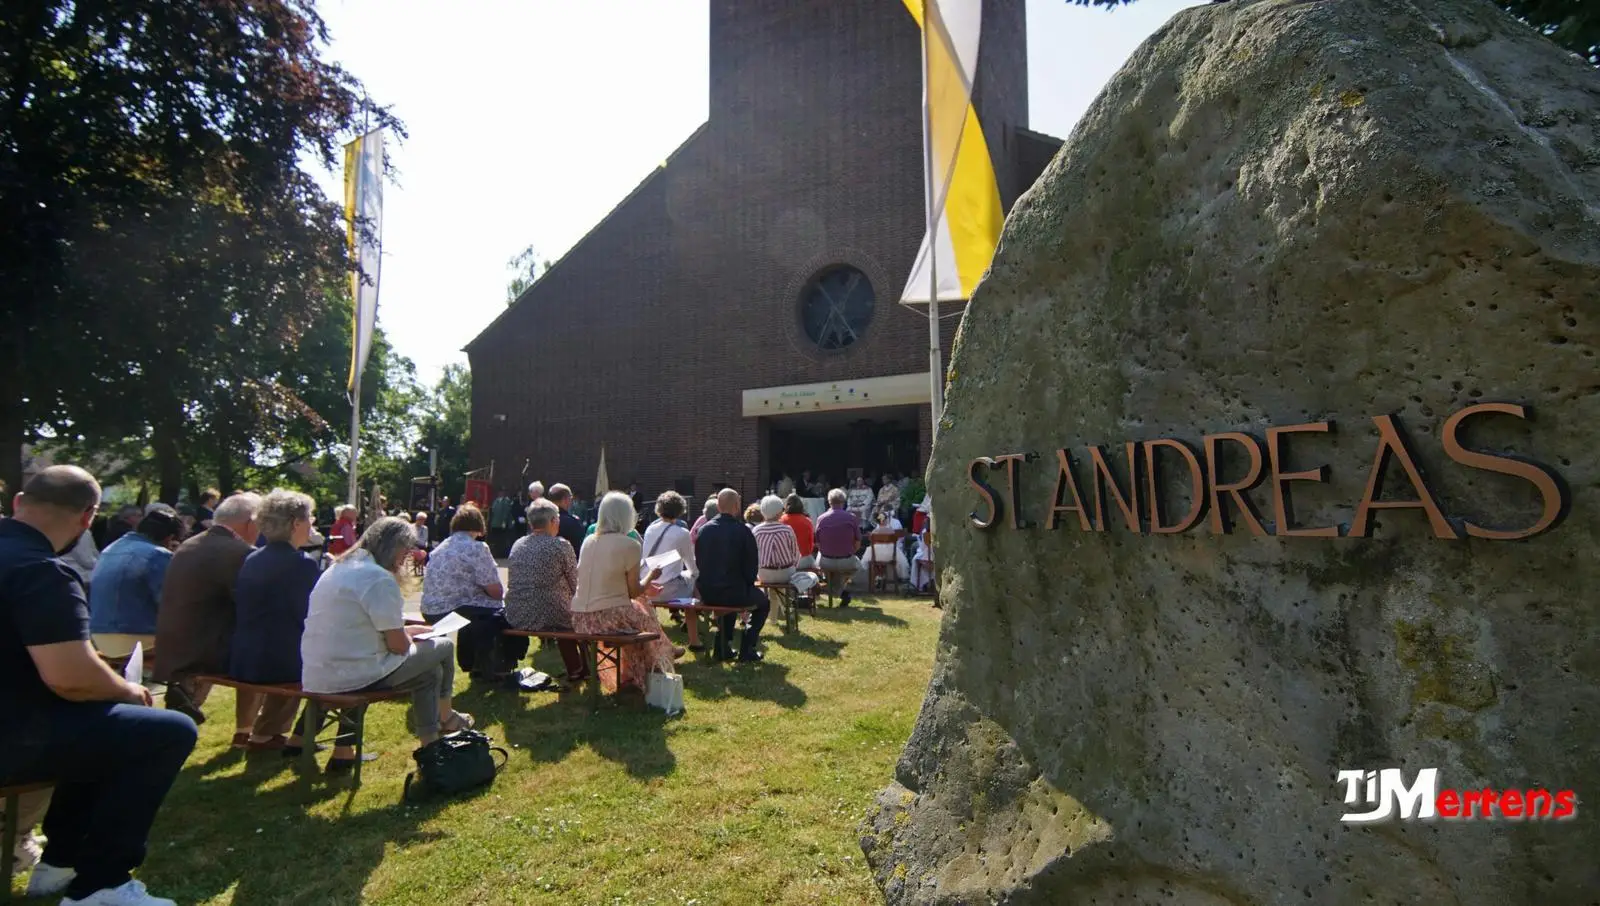 08.06.2023: Foto von Fronleichnam bei heiliger Messe, Sicht auf die Kirche, Stein mit Schiftzug St. Andreas und die Kirchenbesucher auf Bänken.